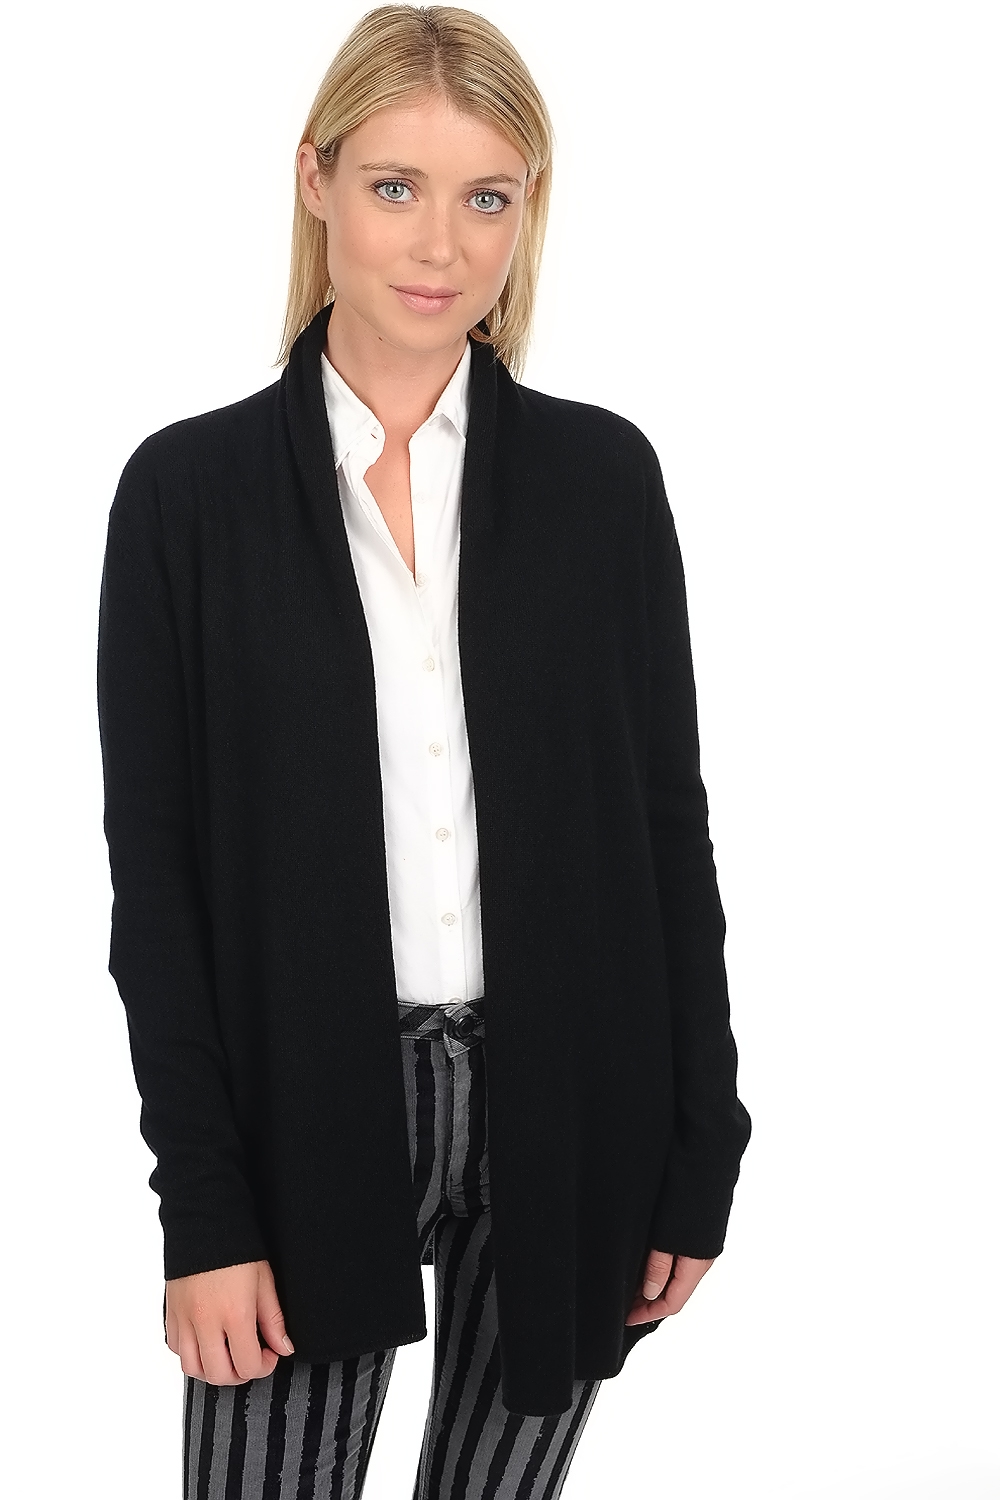 Cachemire robe manteau femme pucci premium black 4xl